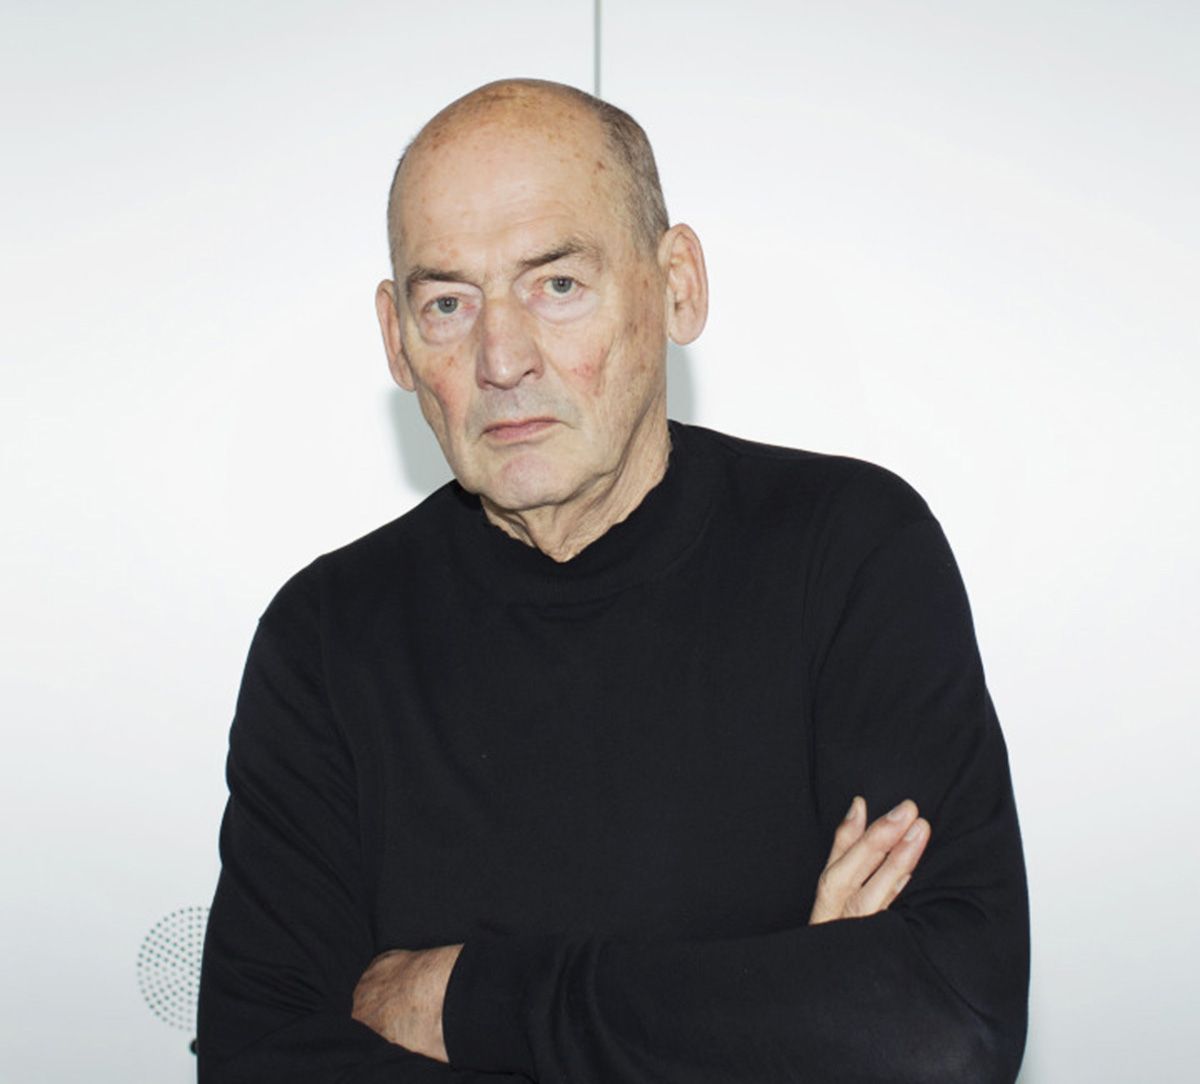 Kiến trúc sư Rem Koolhaas: “Chúng ta cần quan tâm đến nông thôn theo một cách hoàn toàn khác”